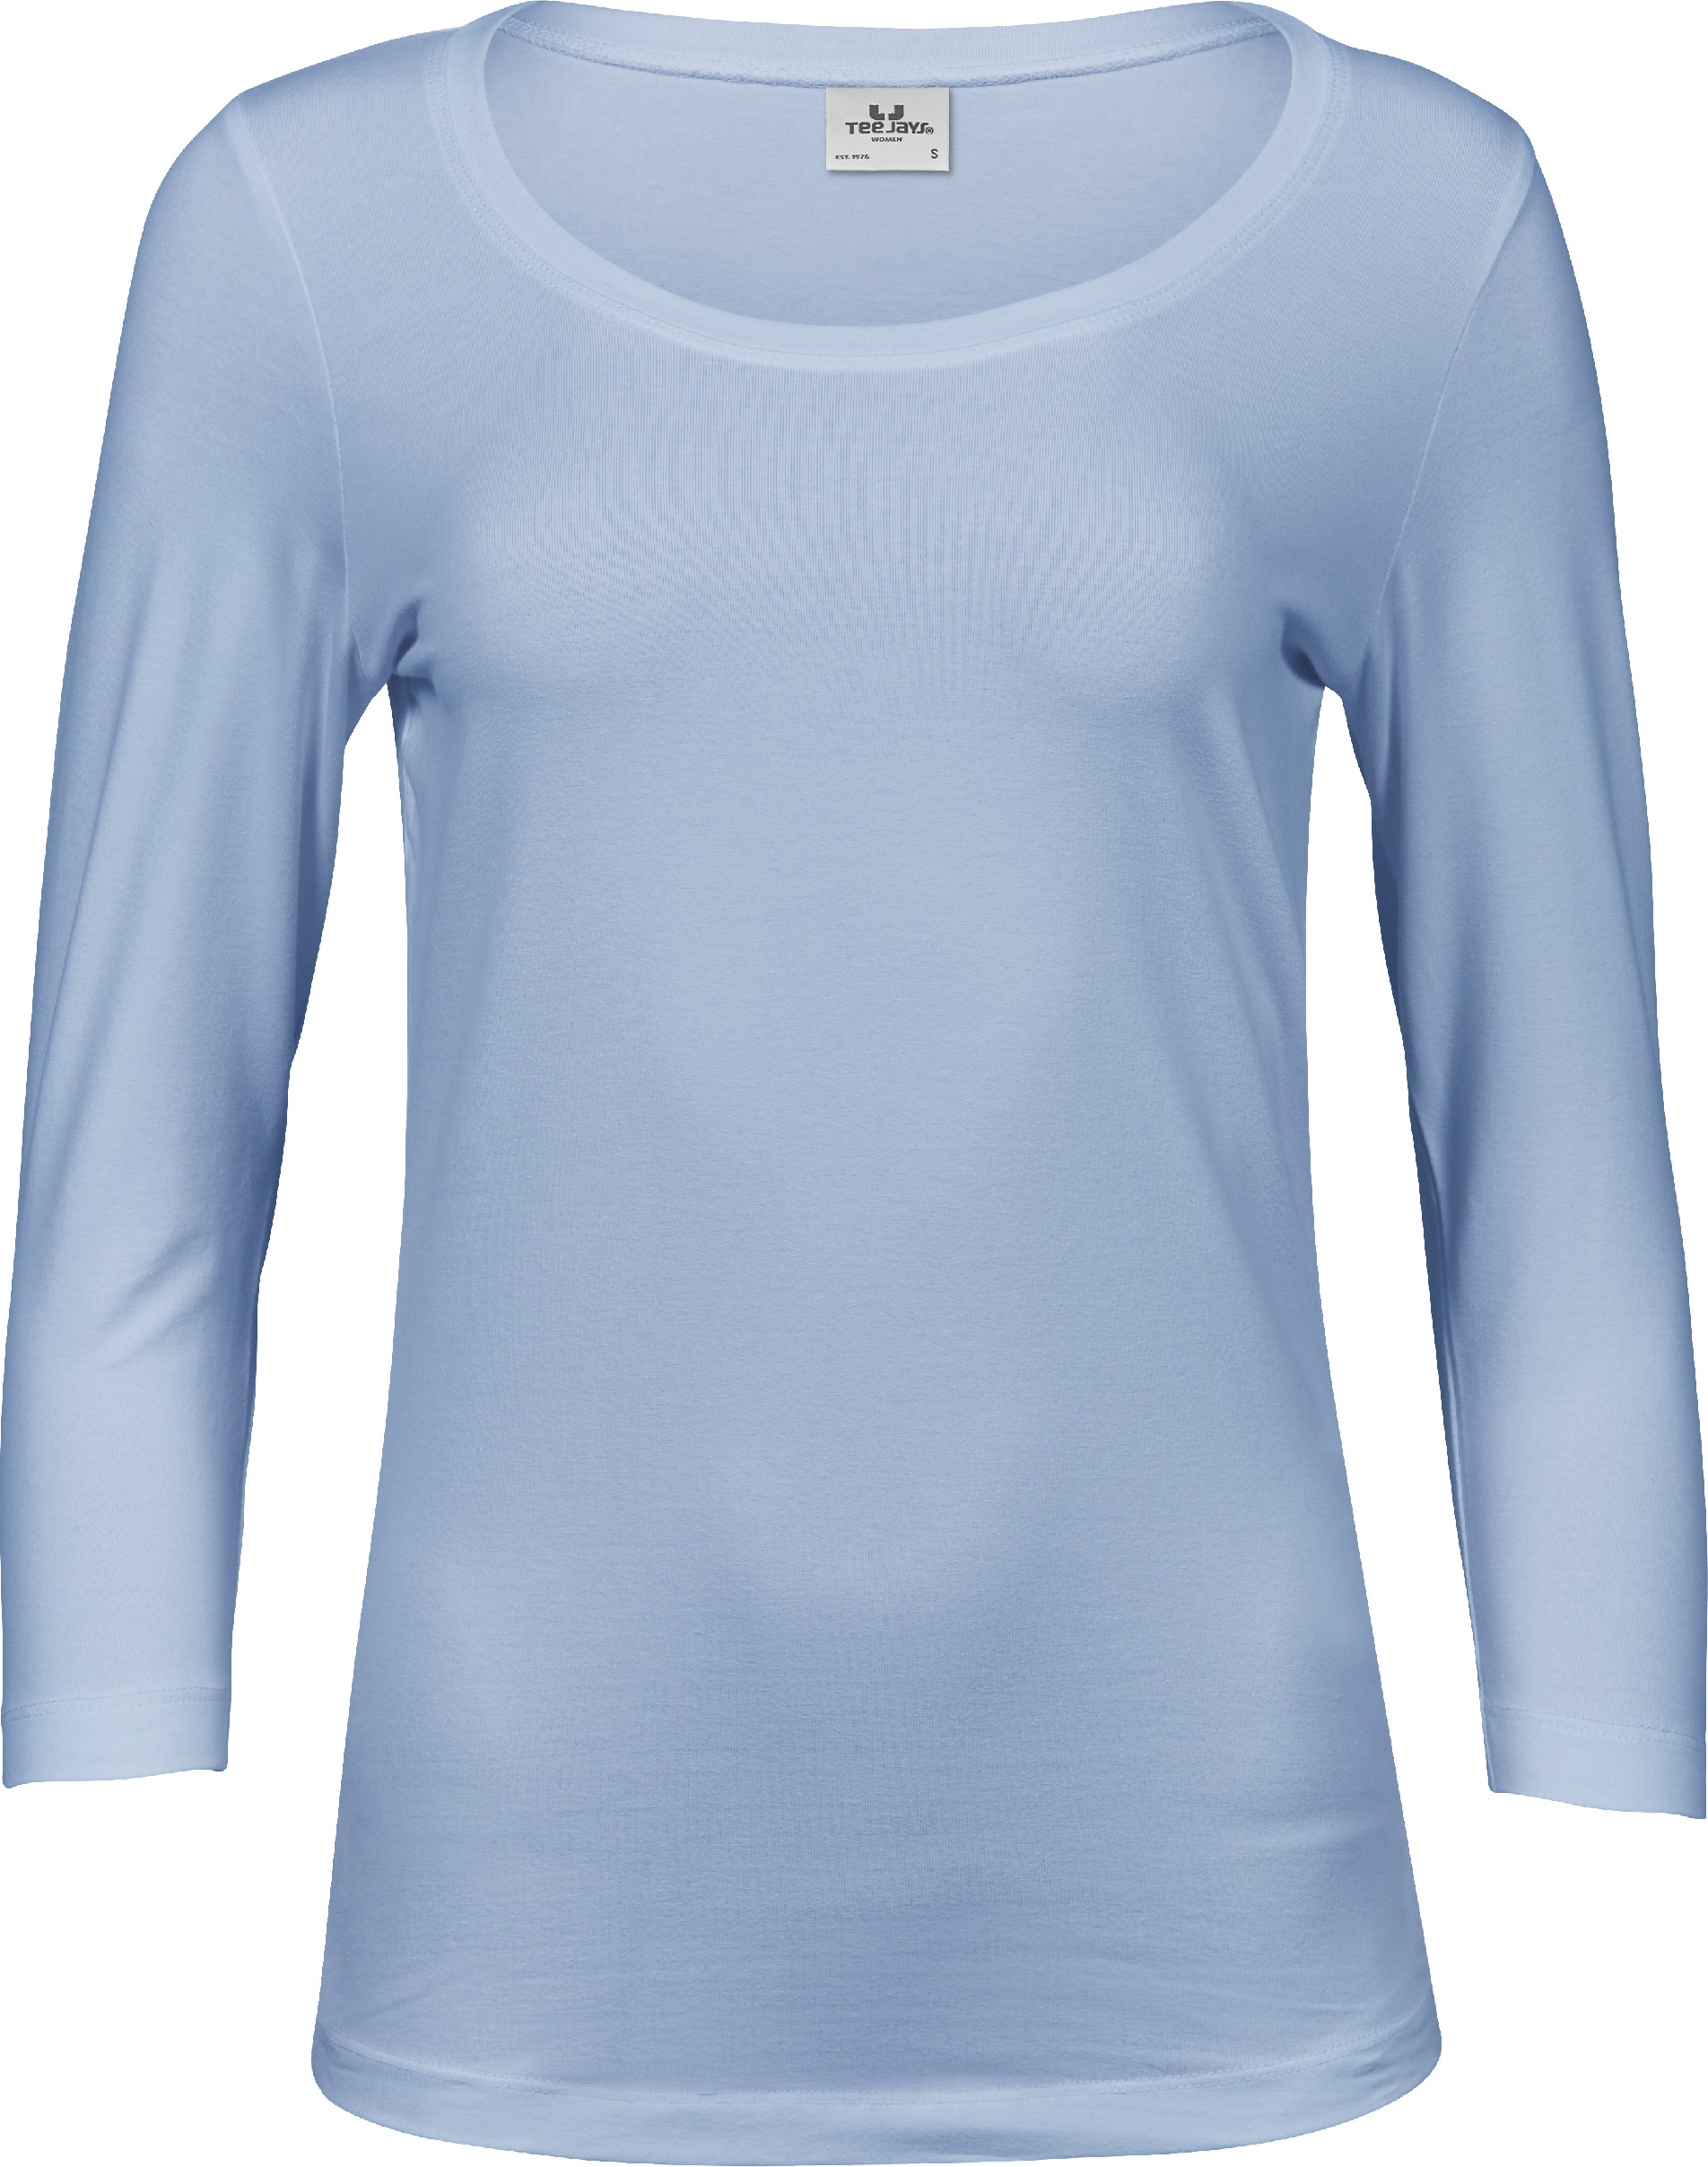 Dámské tričko 3/4 rukáv Stretch Tee Barva: light blue, Velikost: XL